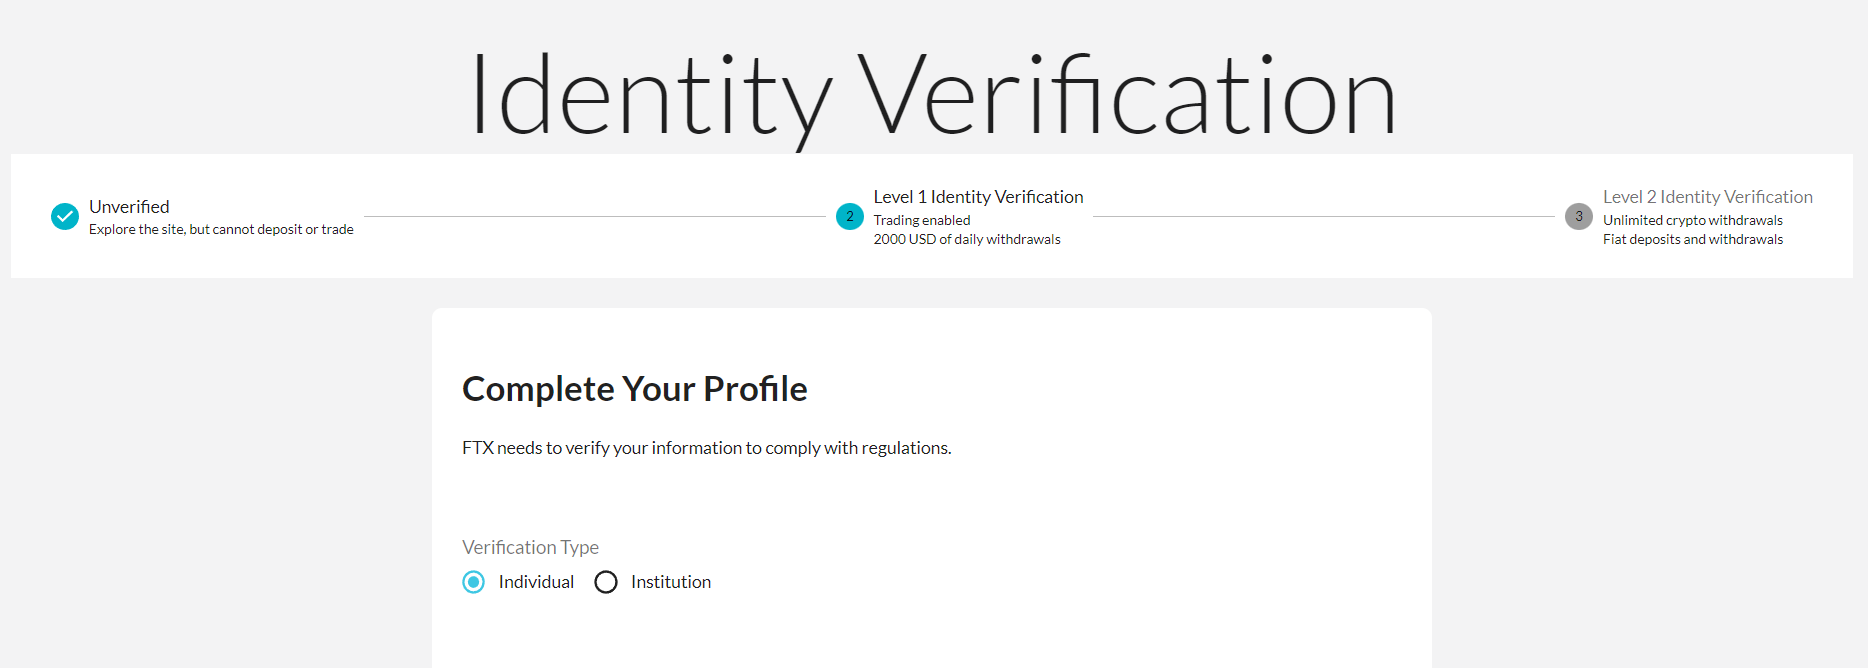 사이트에 들어오면 자동으로 나타나는 Identity Verification을 캡쳐한 사진